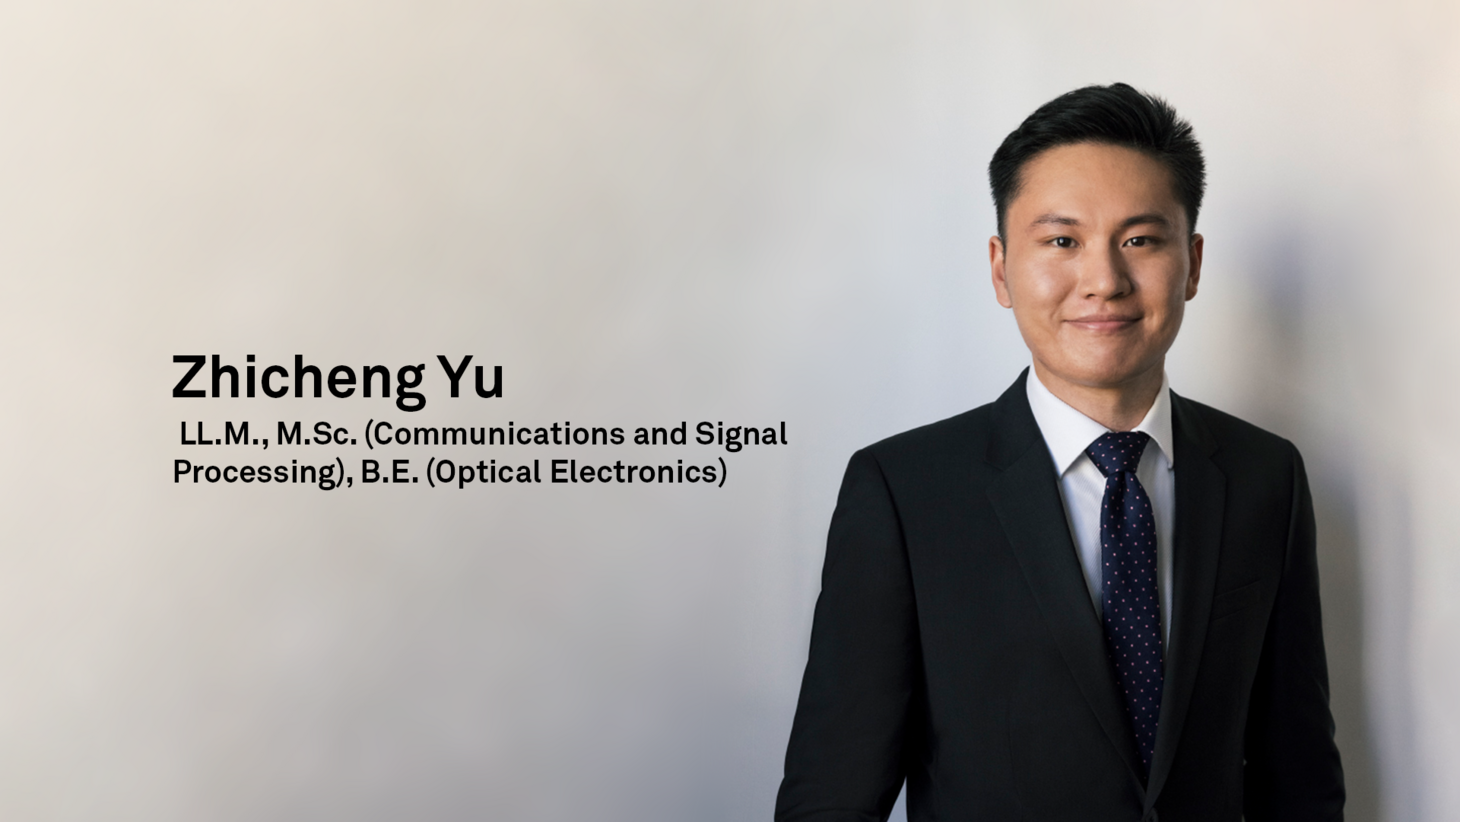 LL.M., M.Sc. (Communications and Signal Processing), B.E. (Optical Electronics) Zhicheng Yu